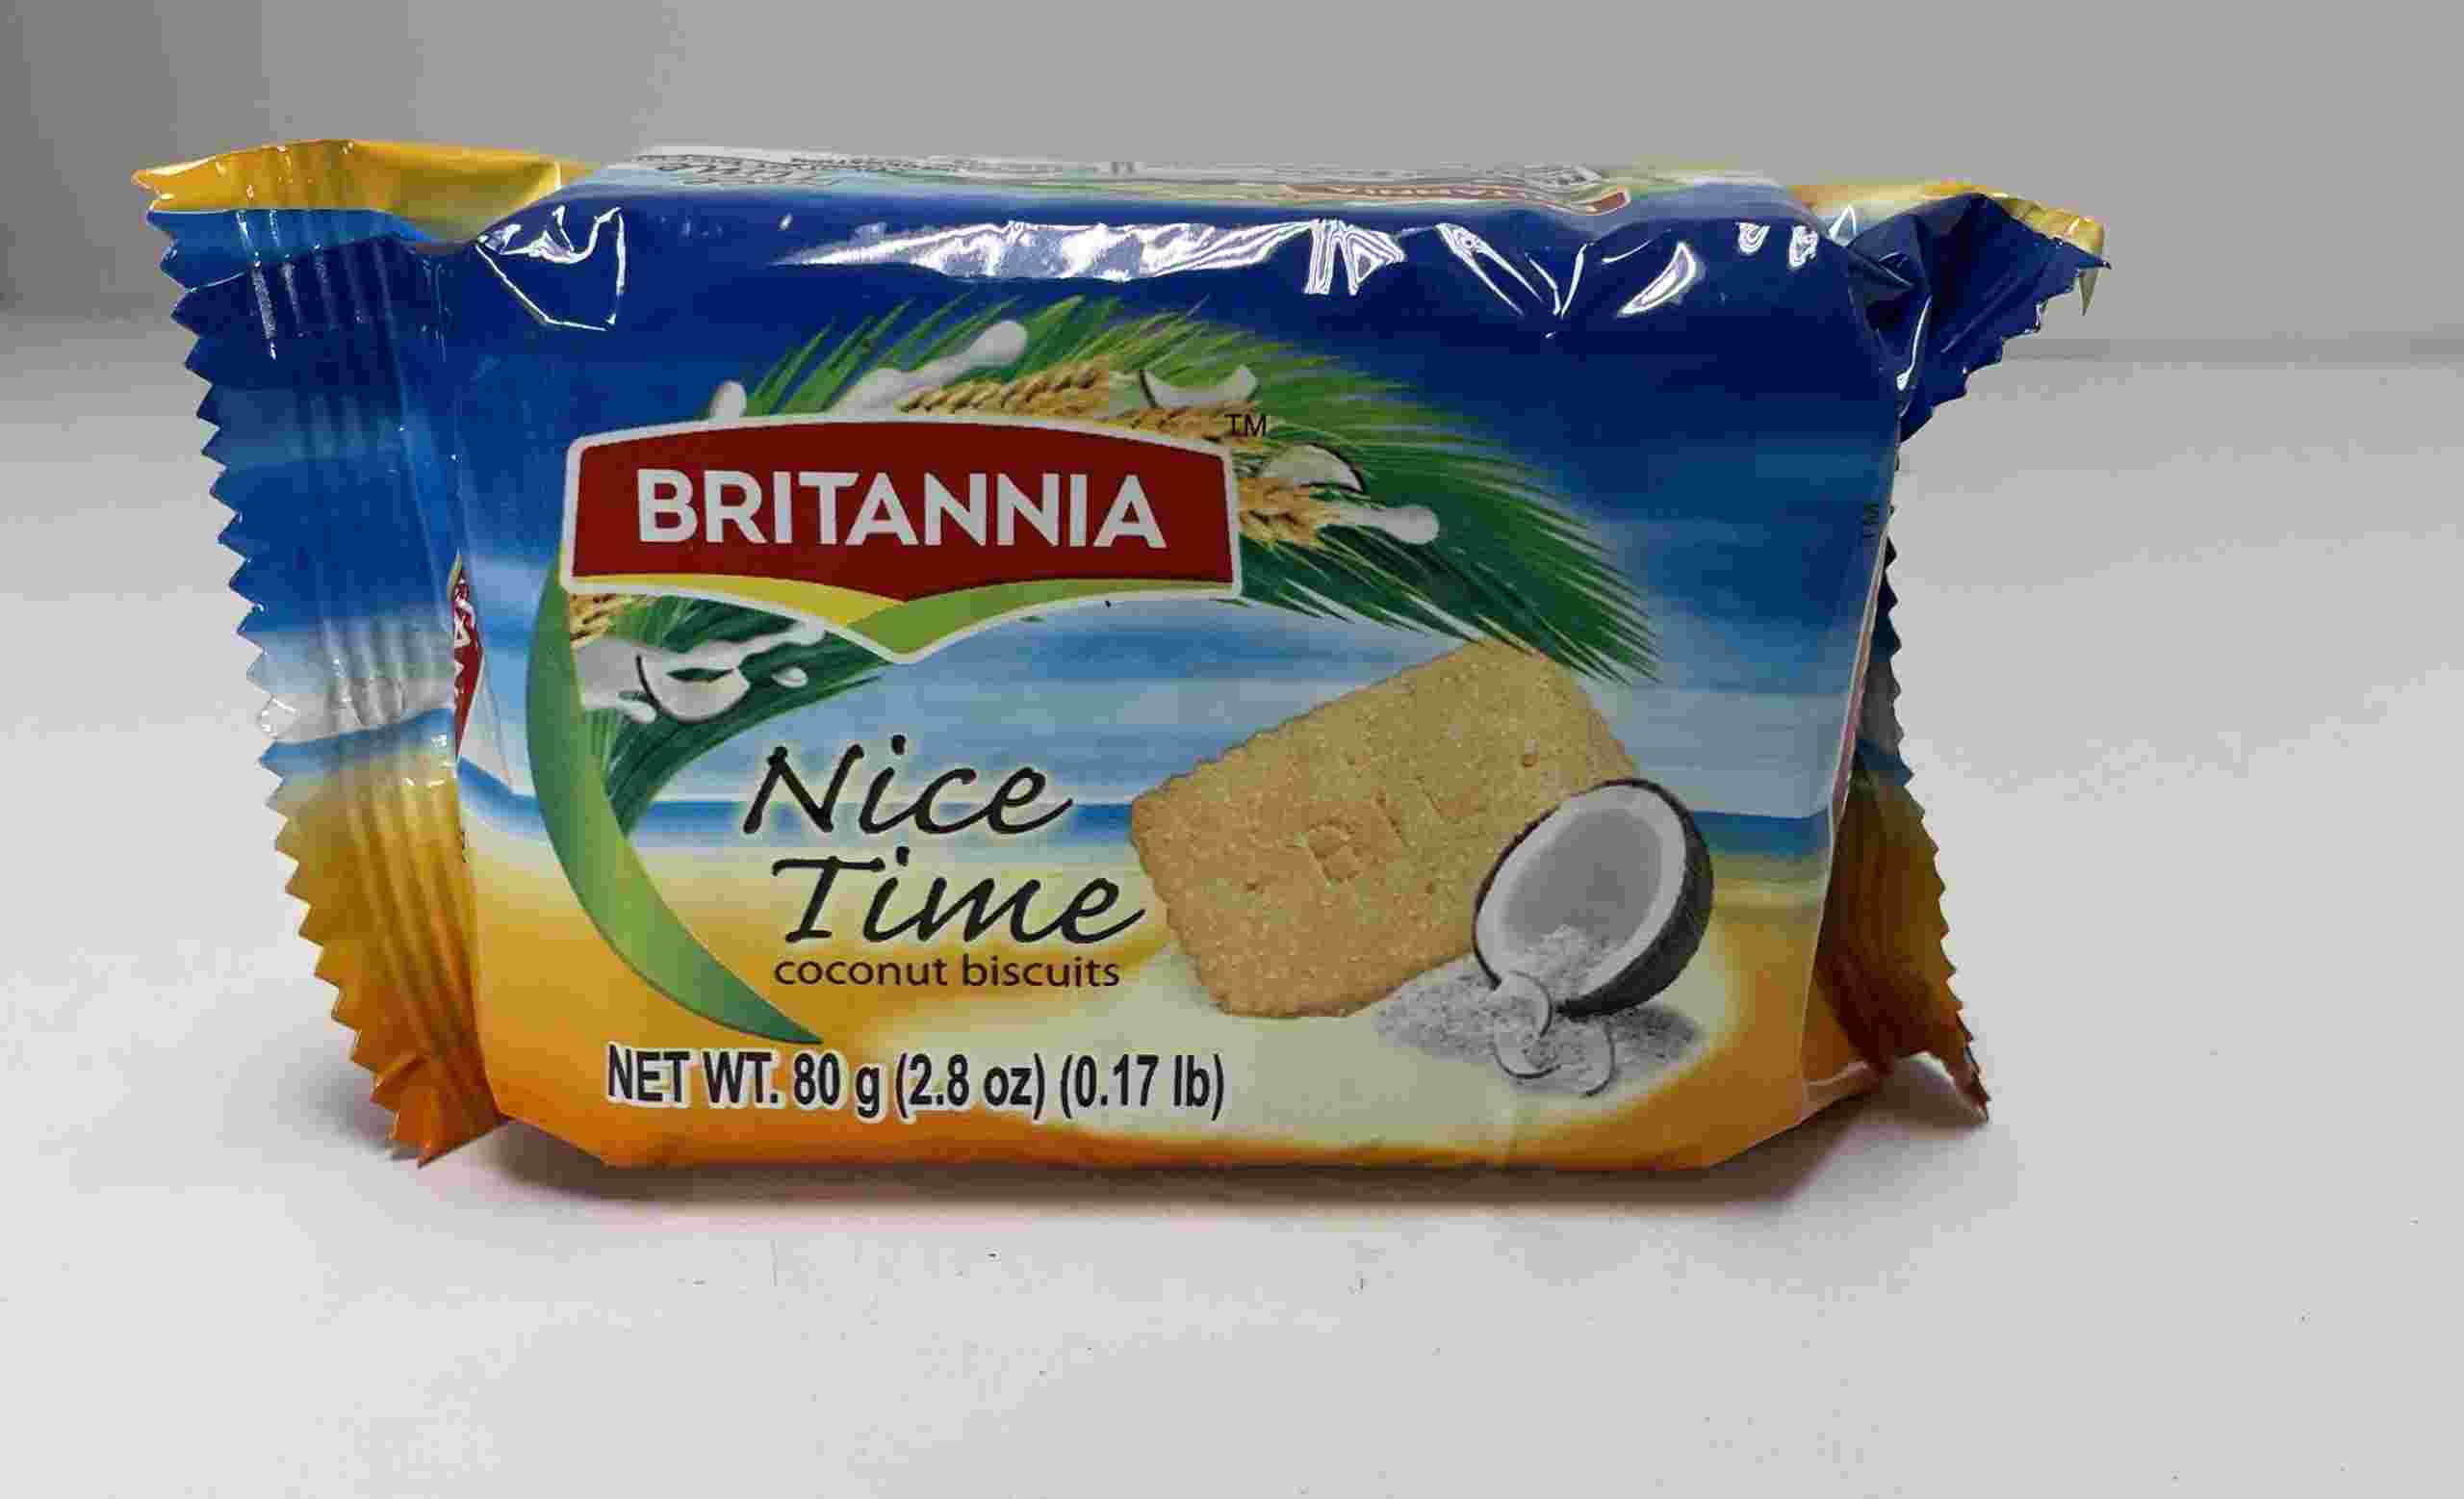 Britannia Nice Time